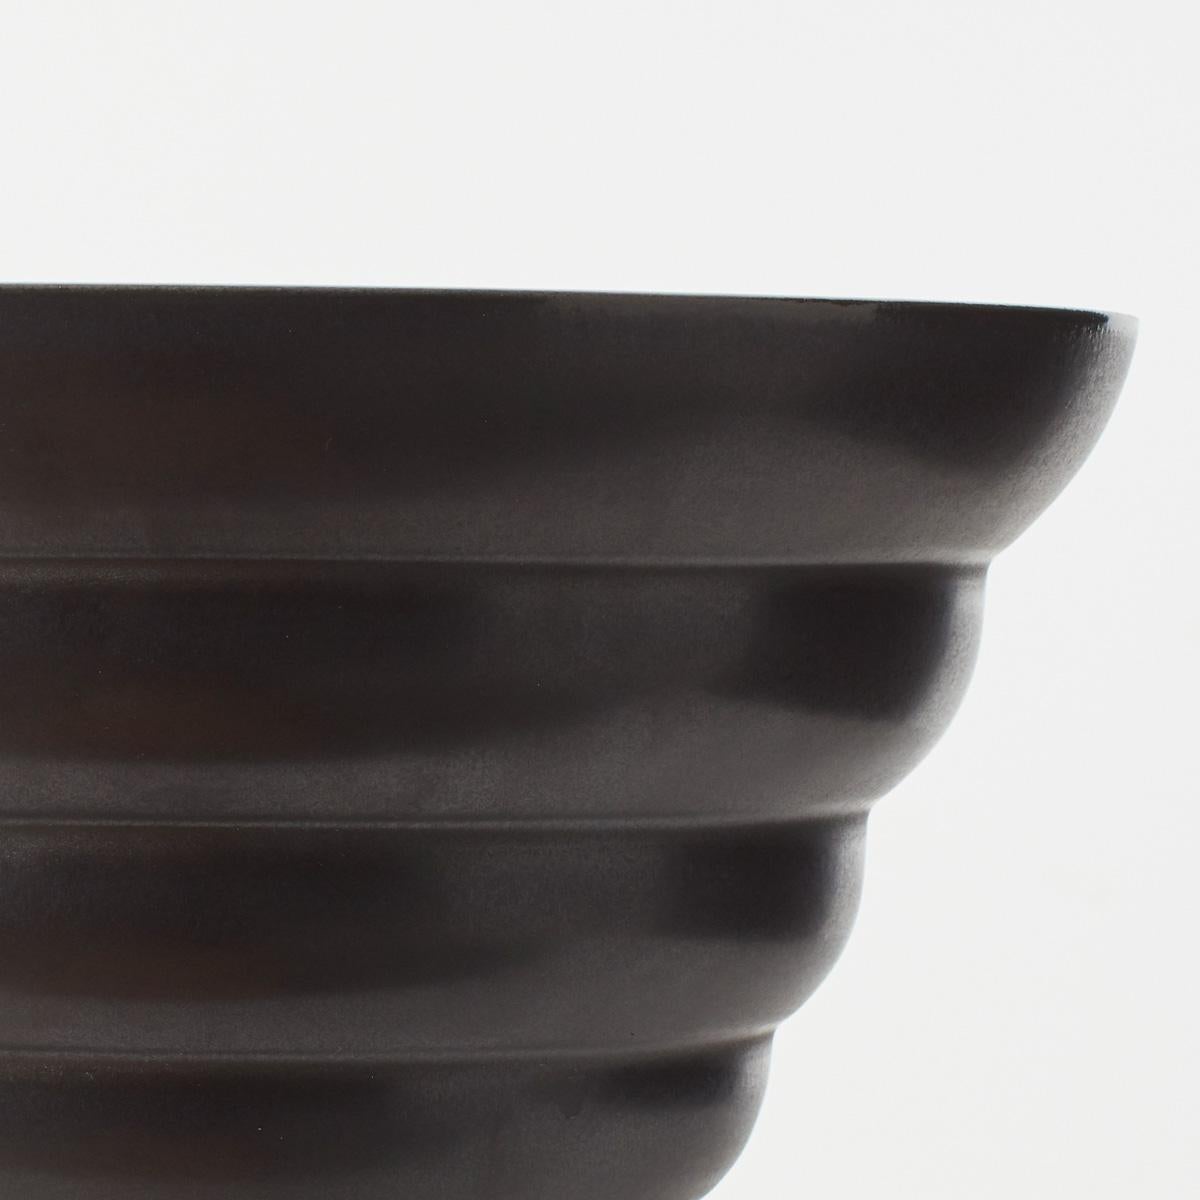 Late 20th Century Ines Van der Sluis Black Ceramic Bowl for Designum / Makkum, Netherlands, 1985